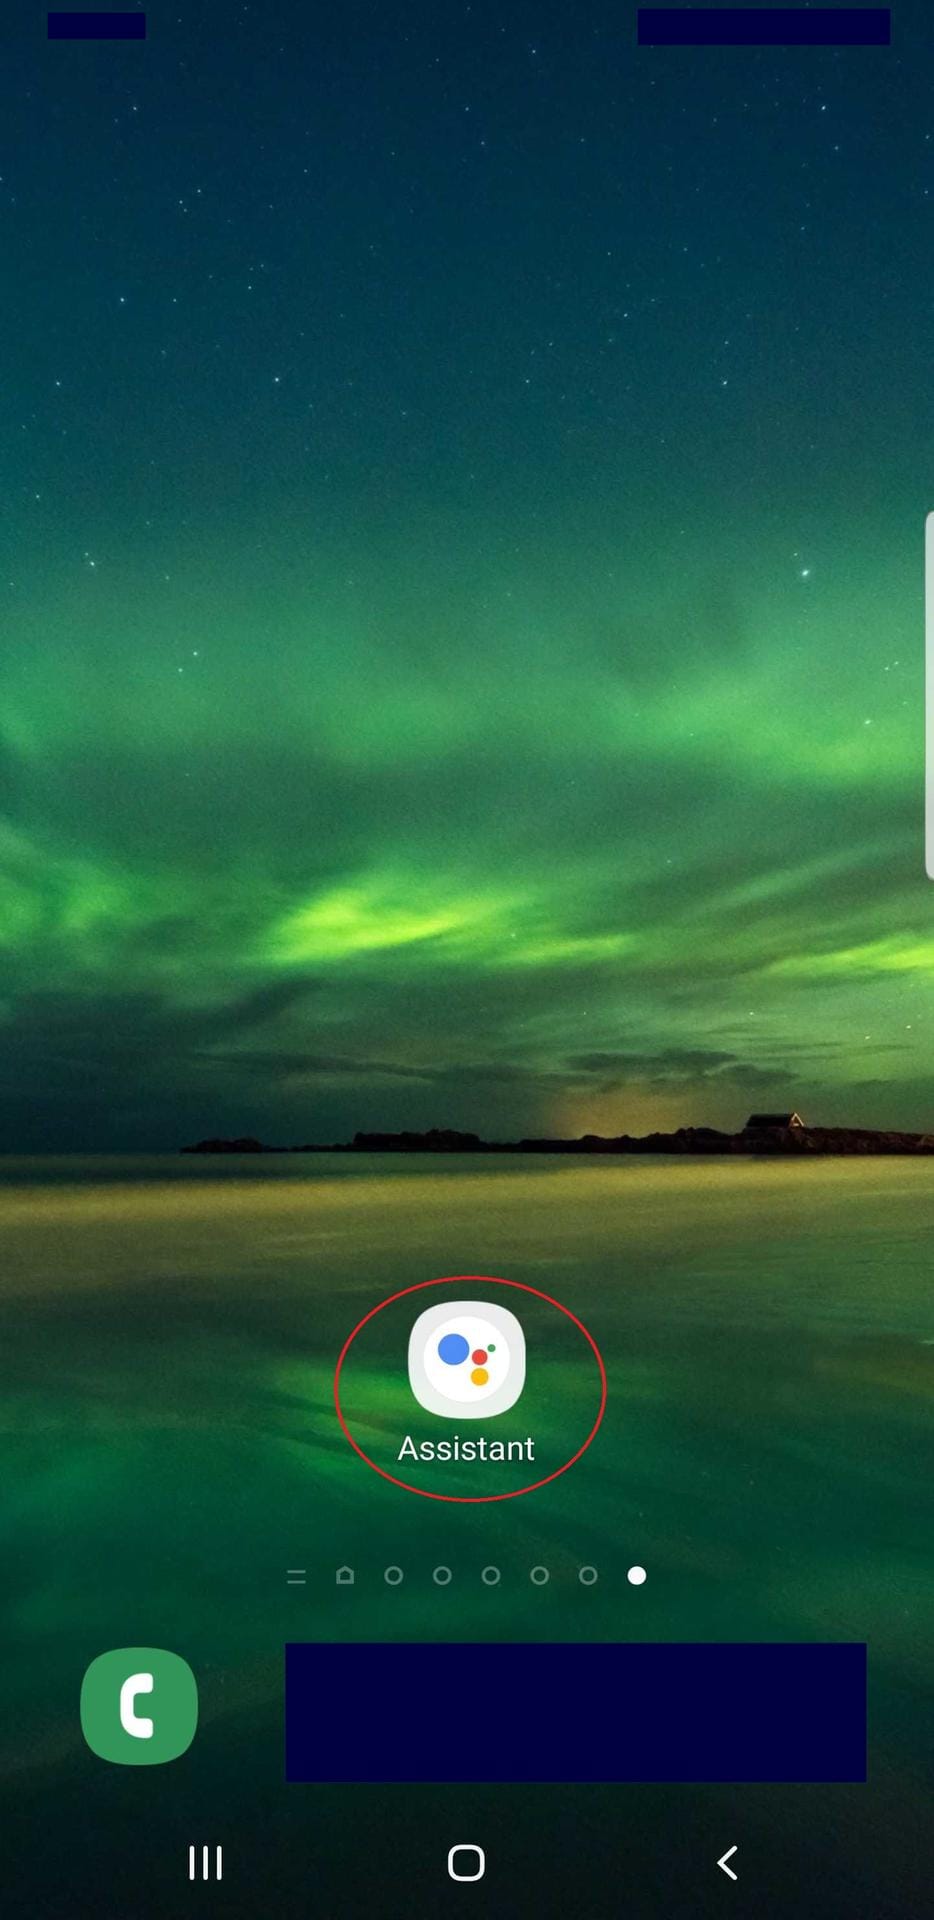 Zum starten des Google Assistant klicken Sie auf die App, oder halten Sie die Home-Taste lange gedrückt.